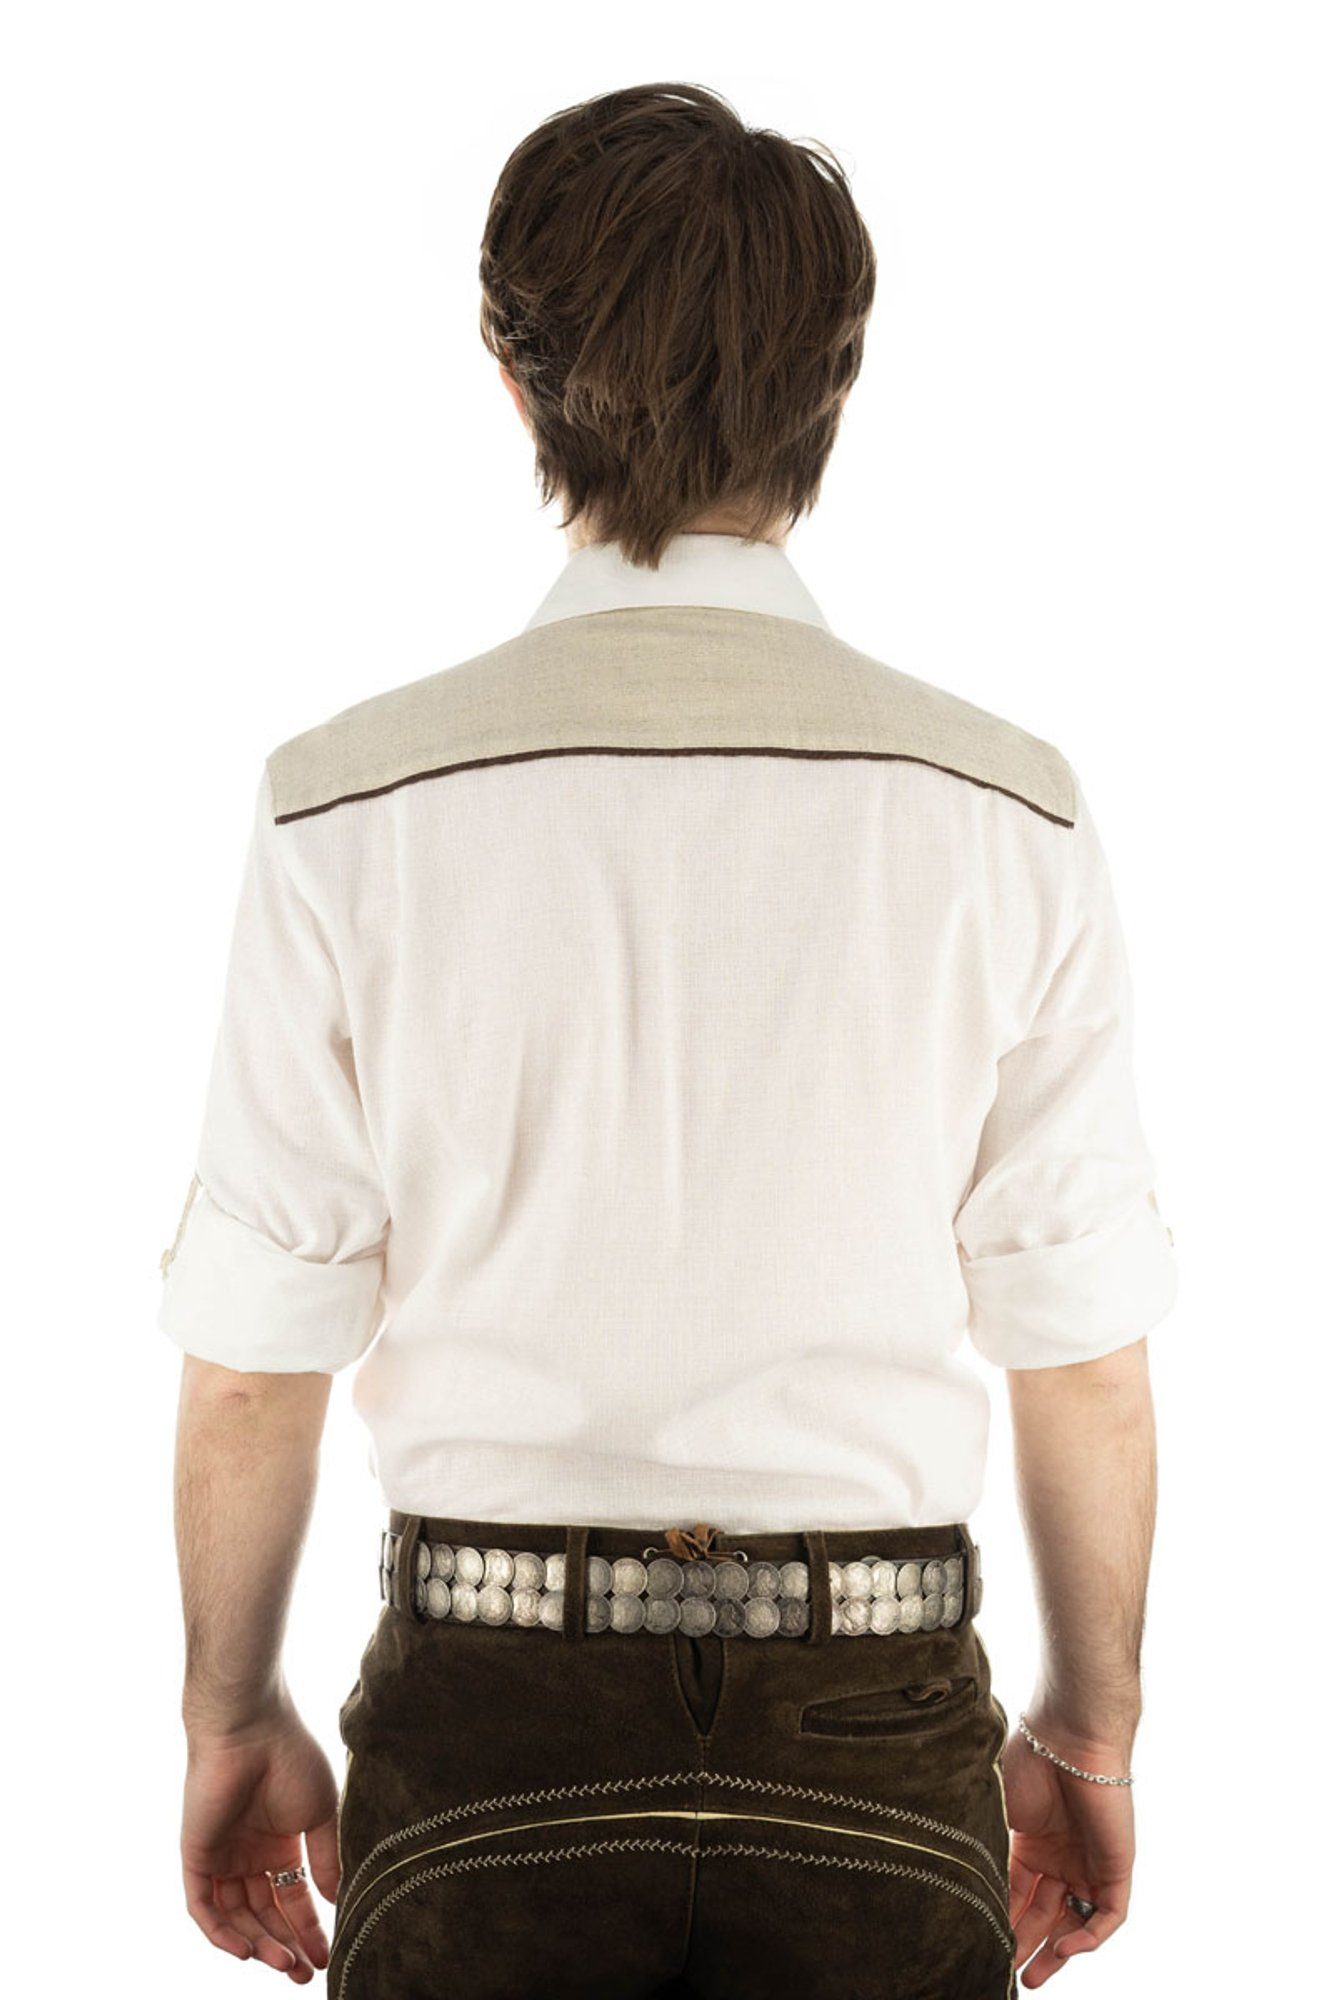 Paspeltasche, Knopfleiste Hupayo mit Langarmhemd der auf Trachtenhemd OS-Trachten Edelweiß-Stickerei